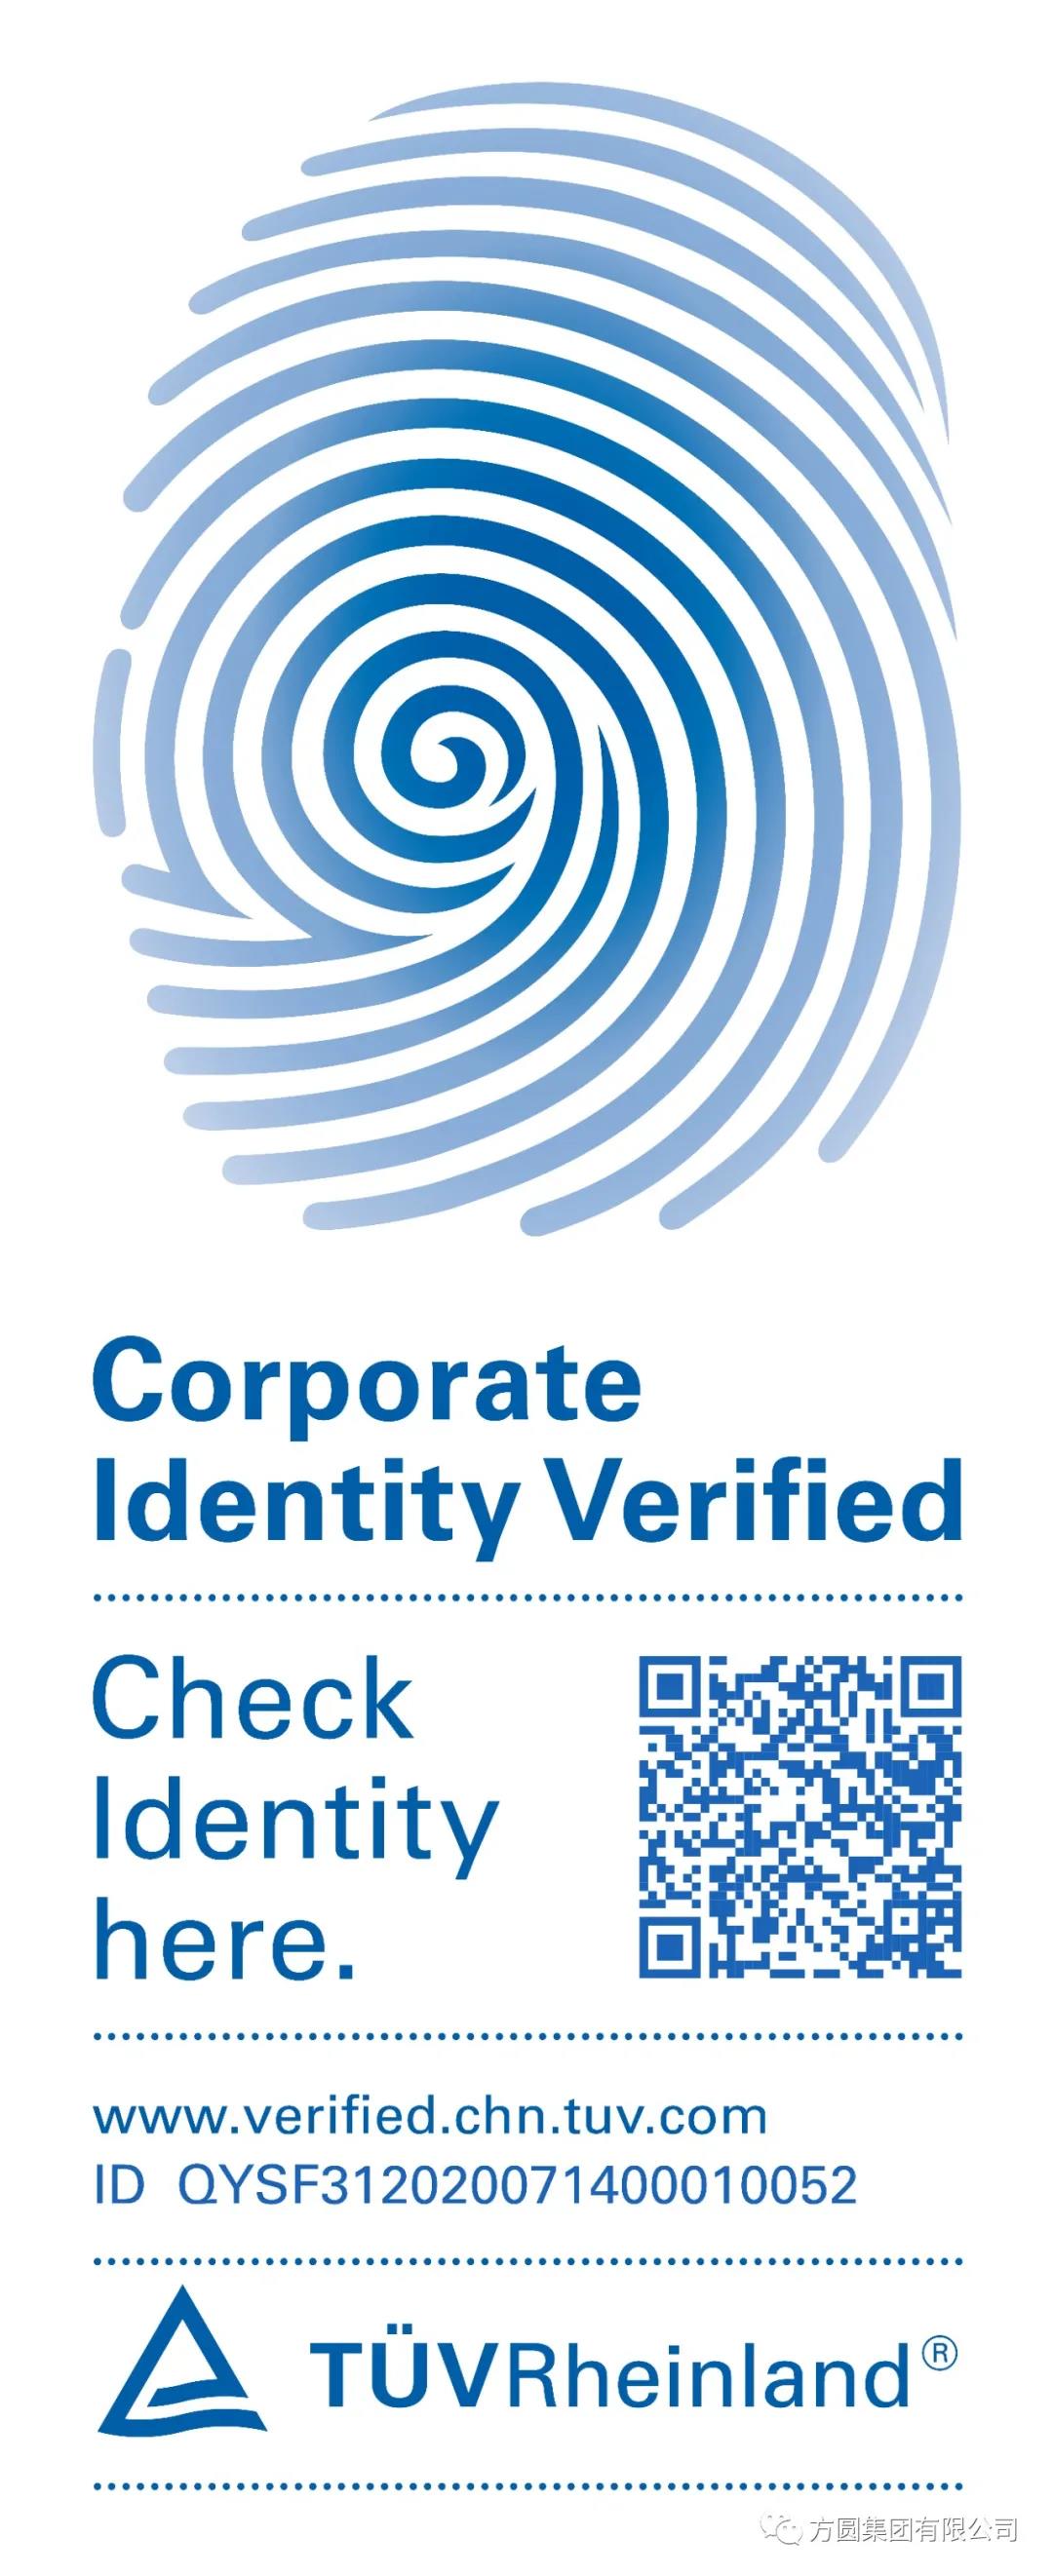 【标识认证】方圆集团顺利通过德国莱茵CIV企业身份标识认证